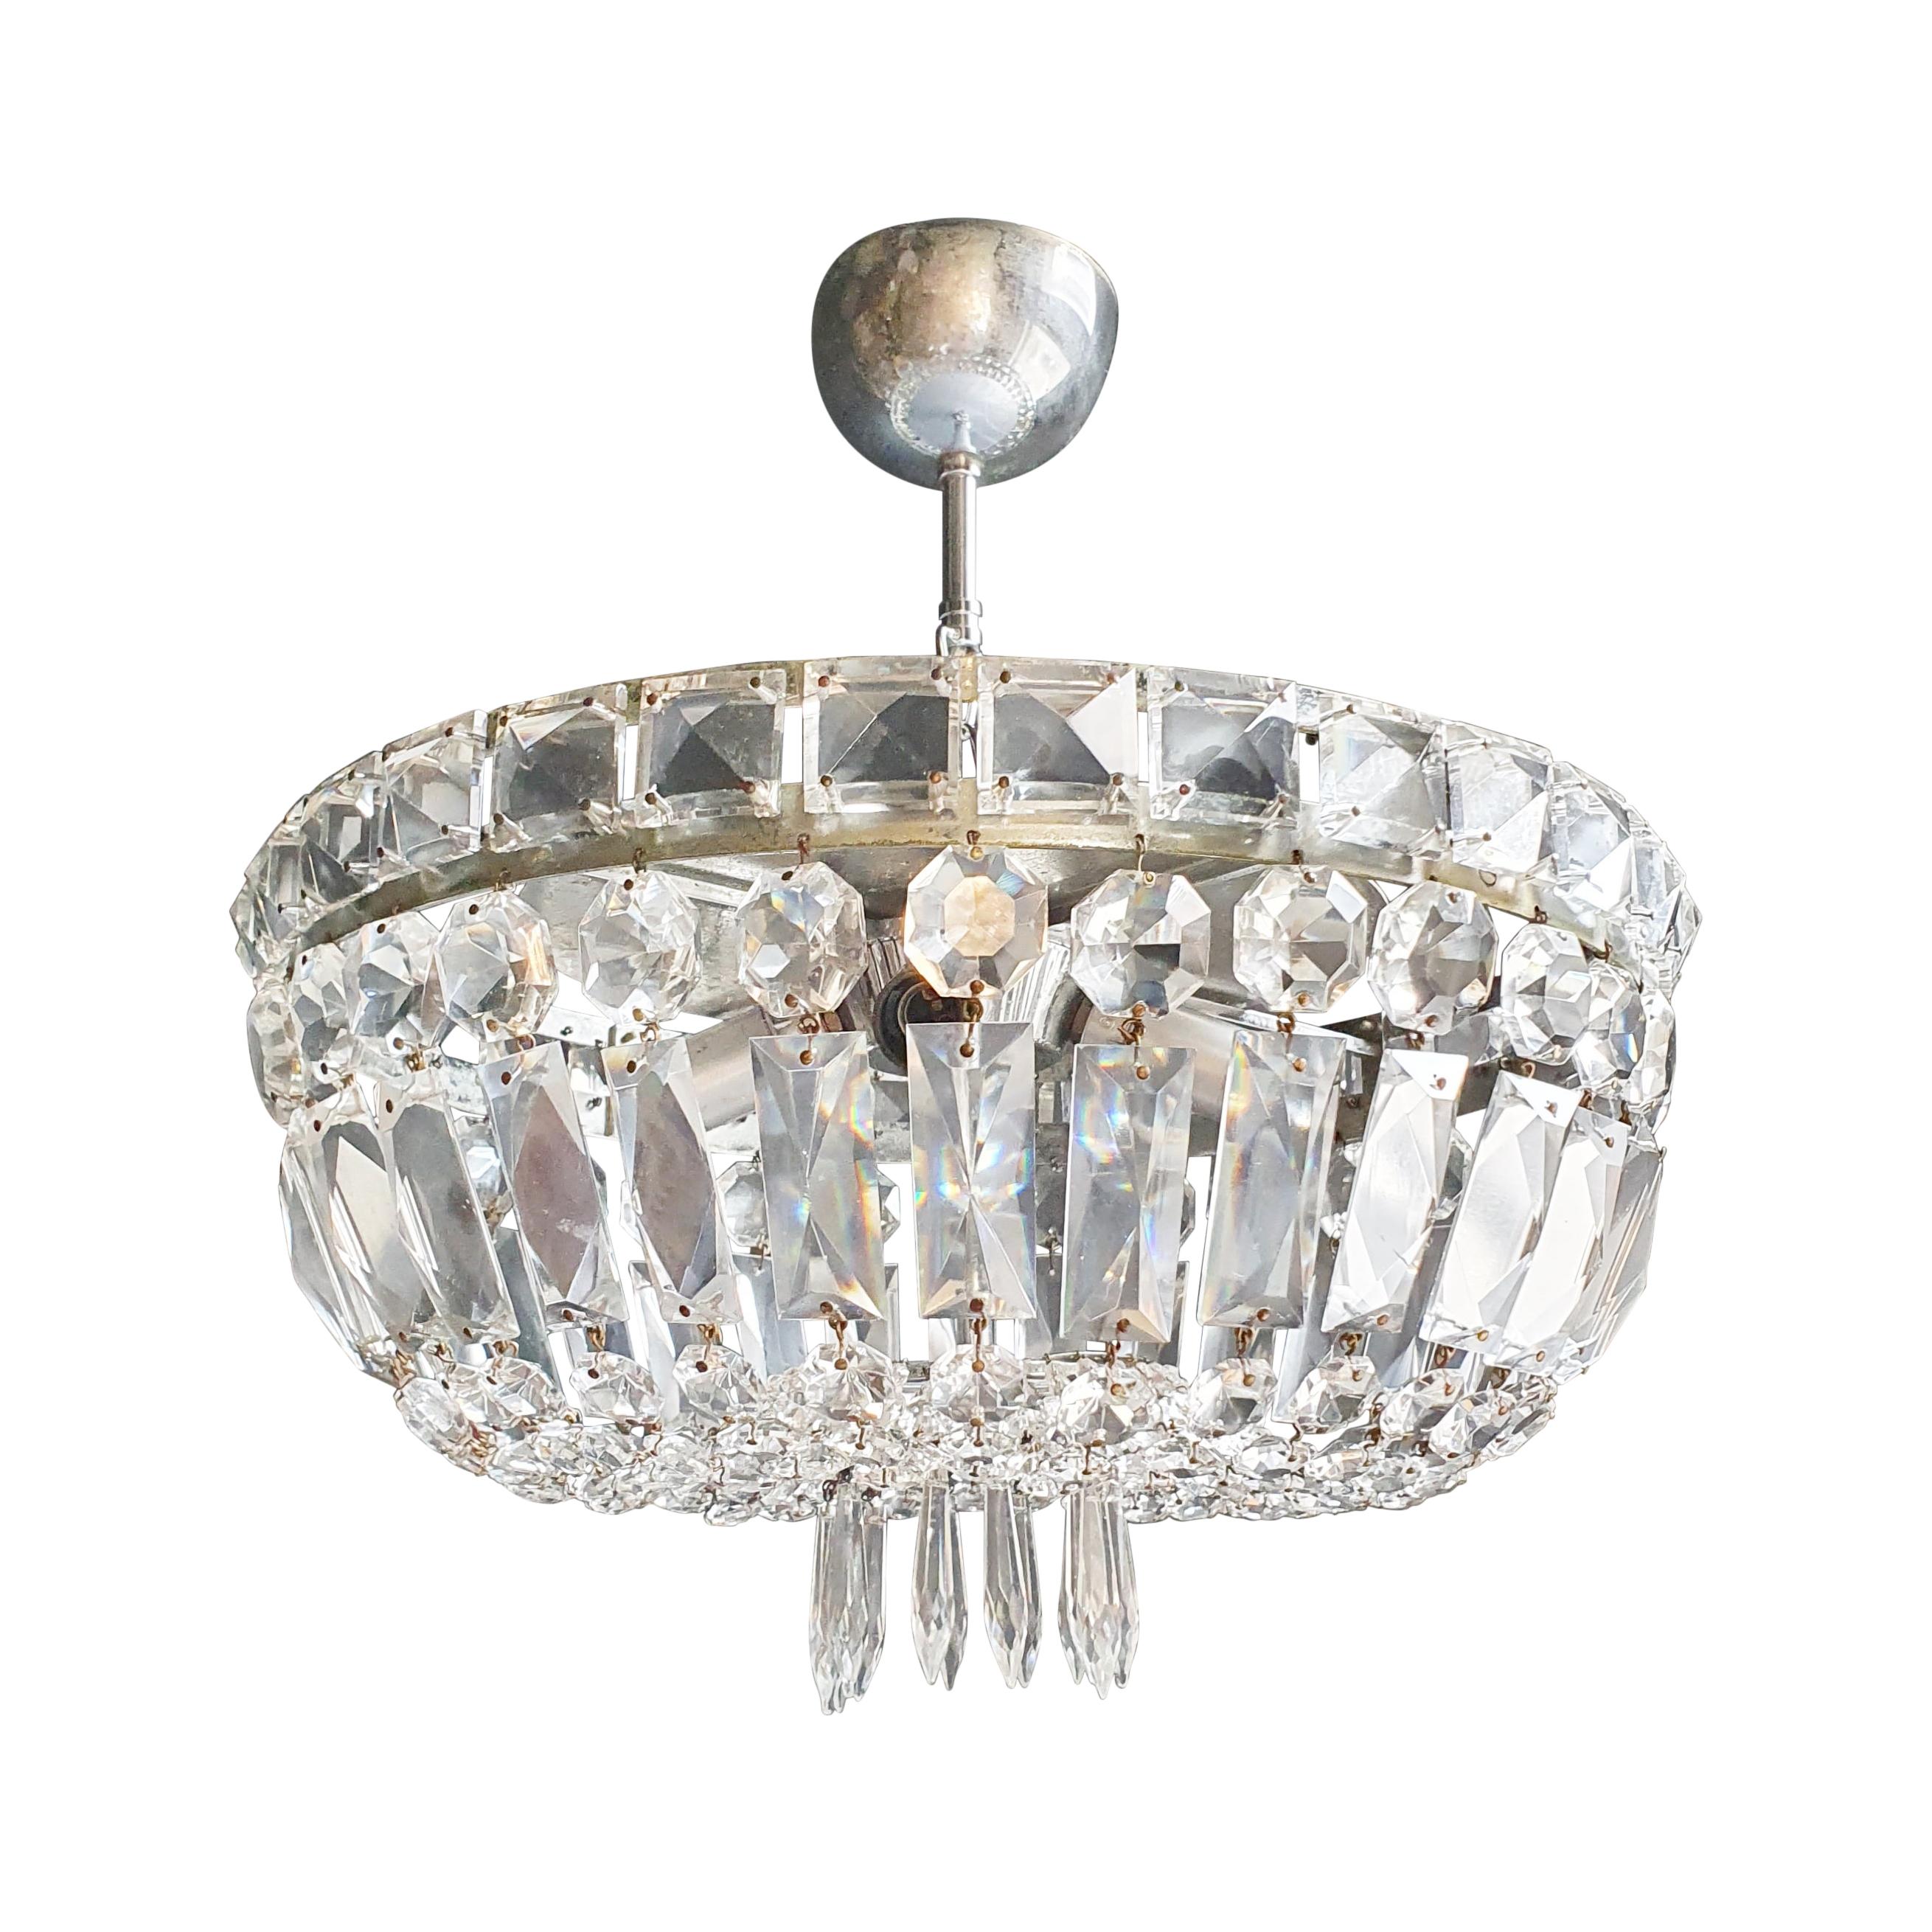 Art Deco Low Plafonnier Silver Crystal Chandelier Lustre Ceiling Lamp Antique